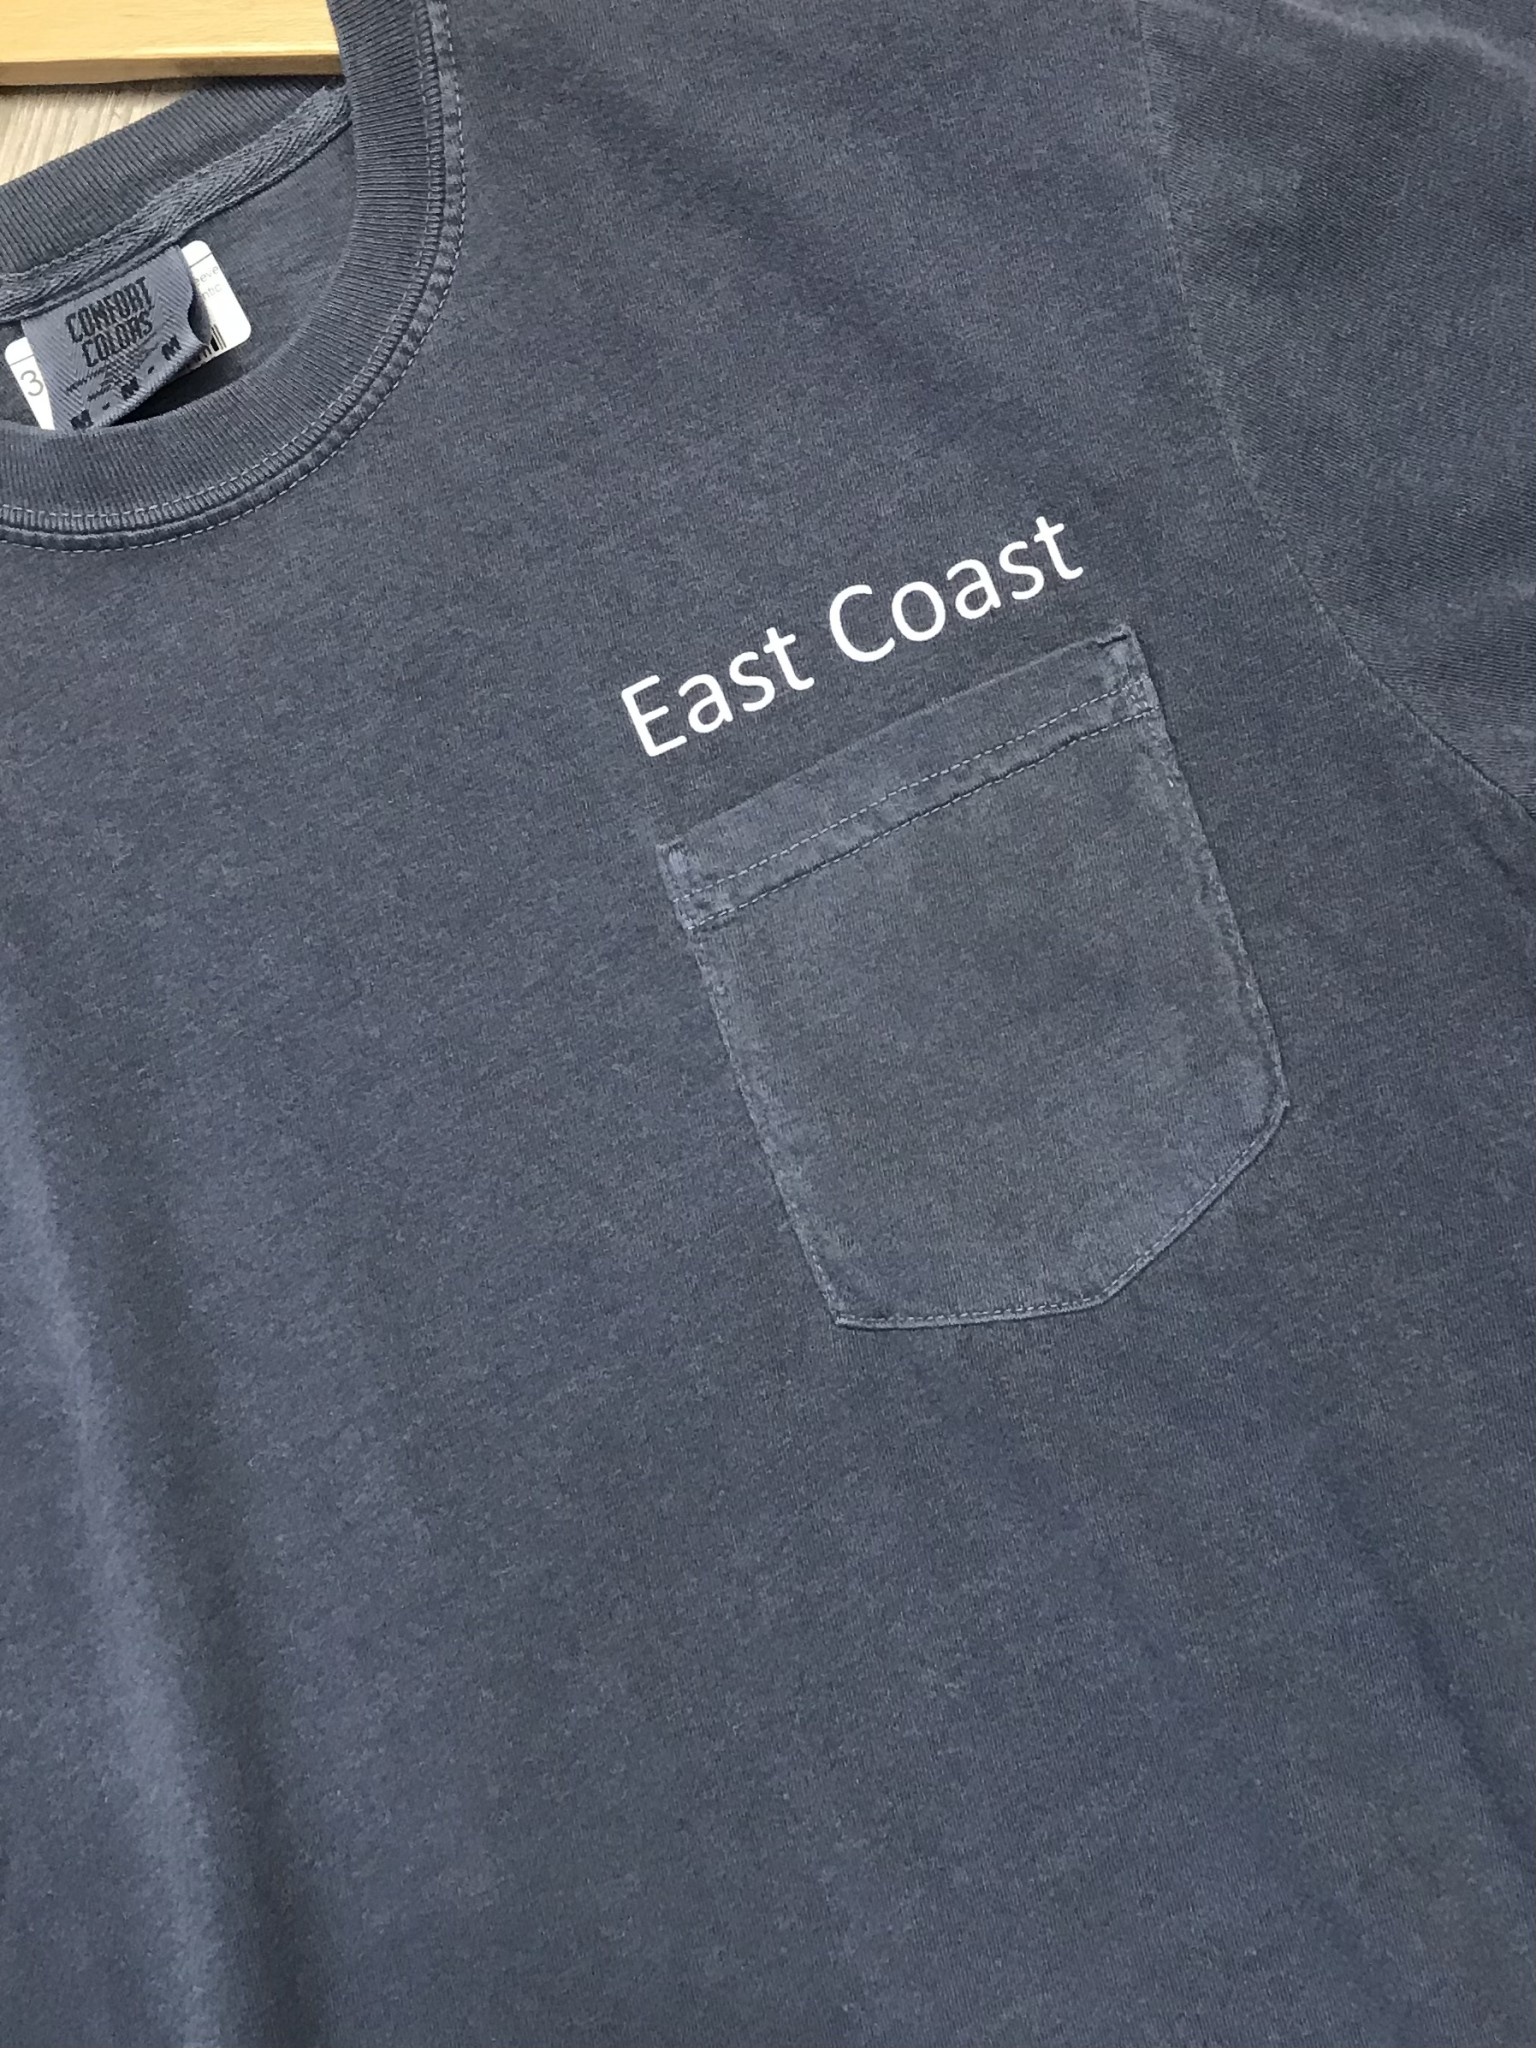 Beach House East Coast Short Sleeve  Pocket Tee